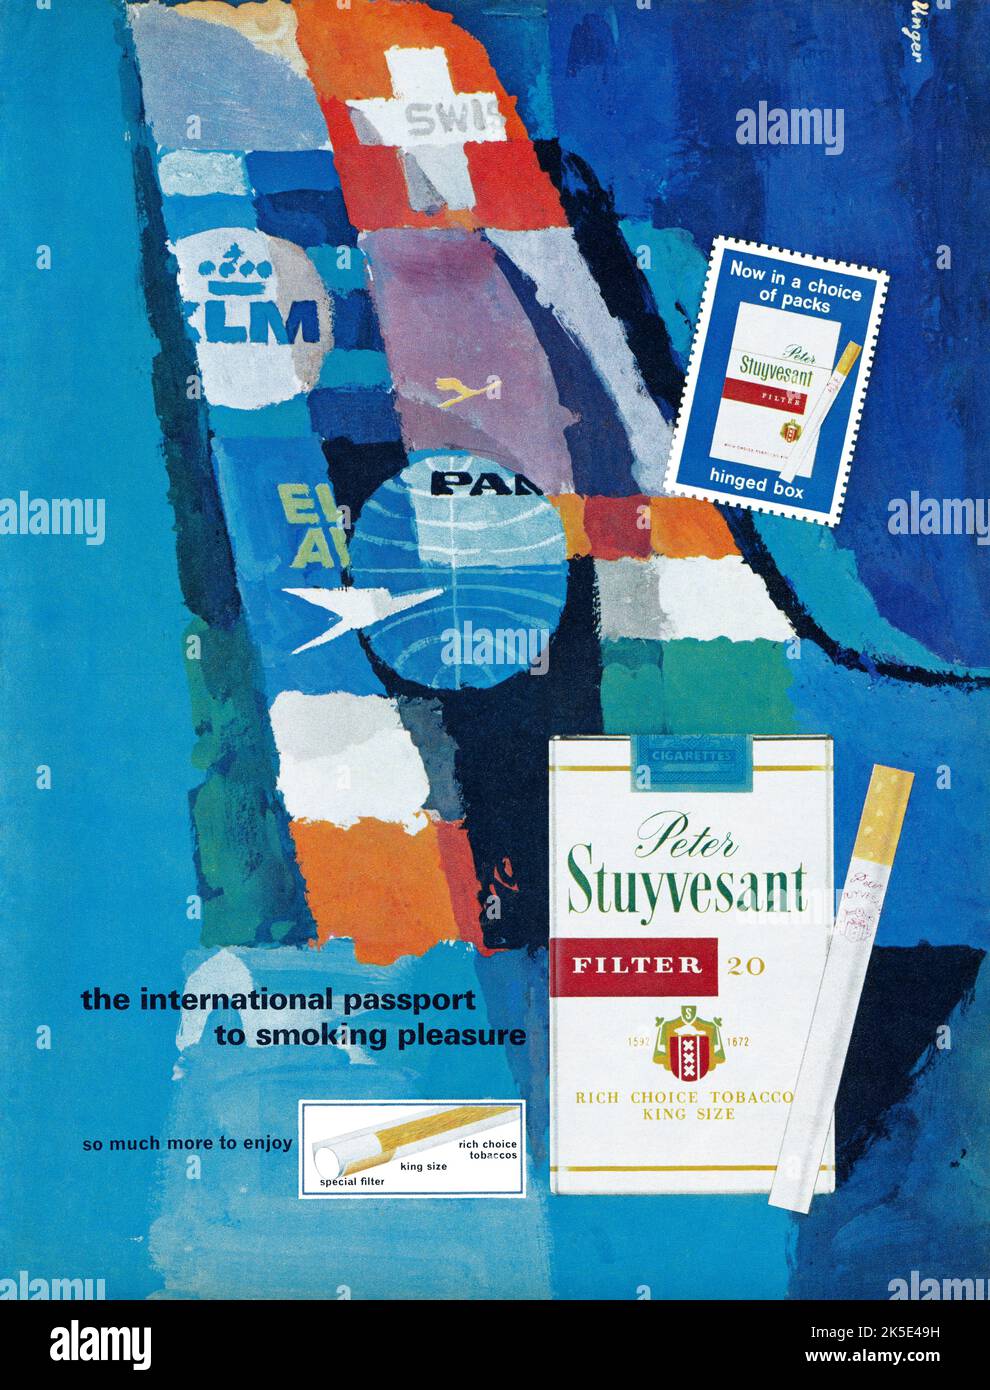 1965 publicité britannique pour les cigarettes Peter Stuyvesant. Banque D'Images